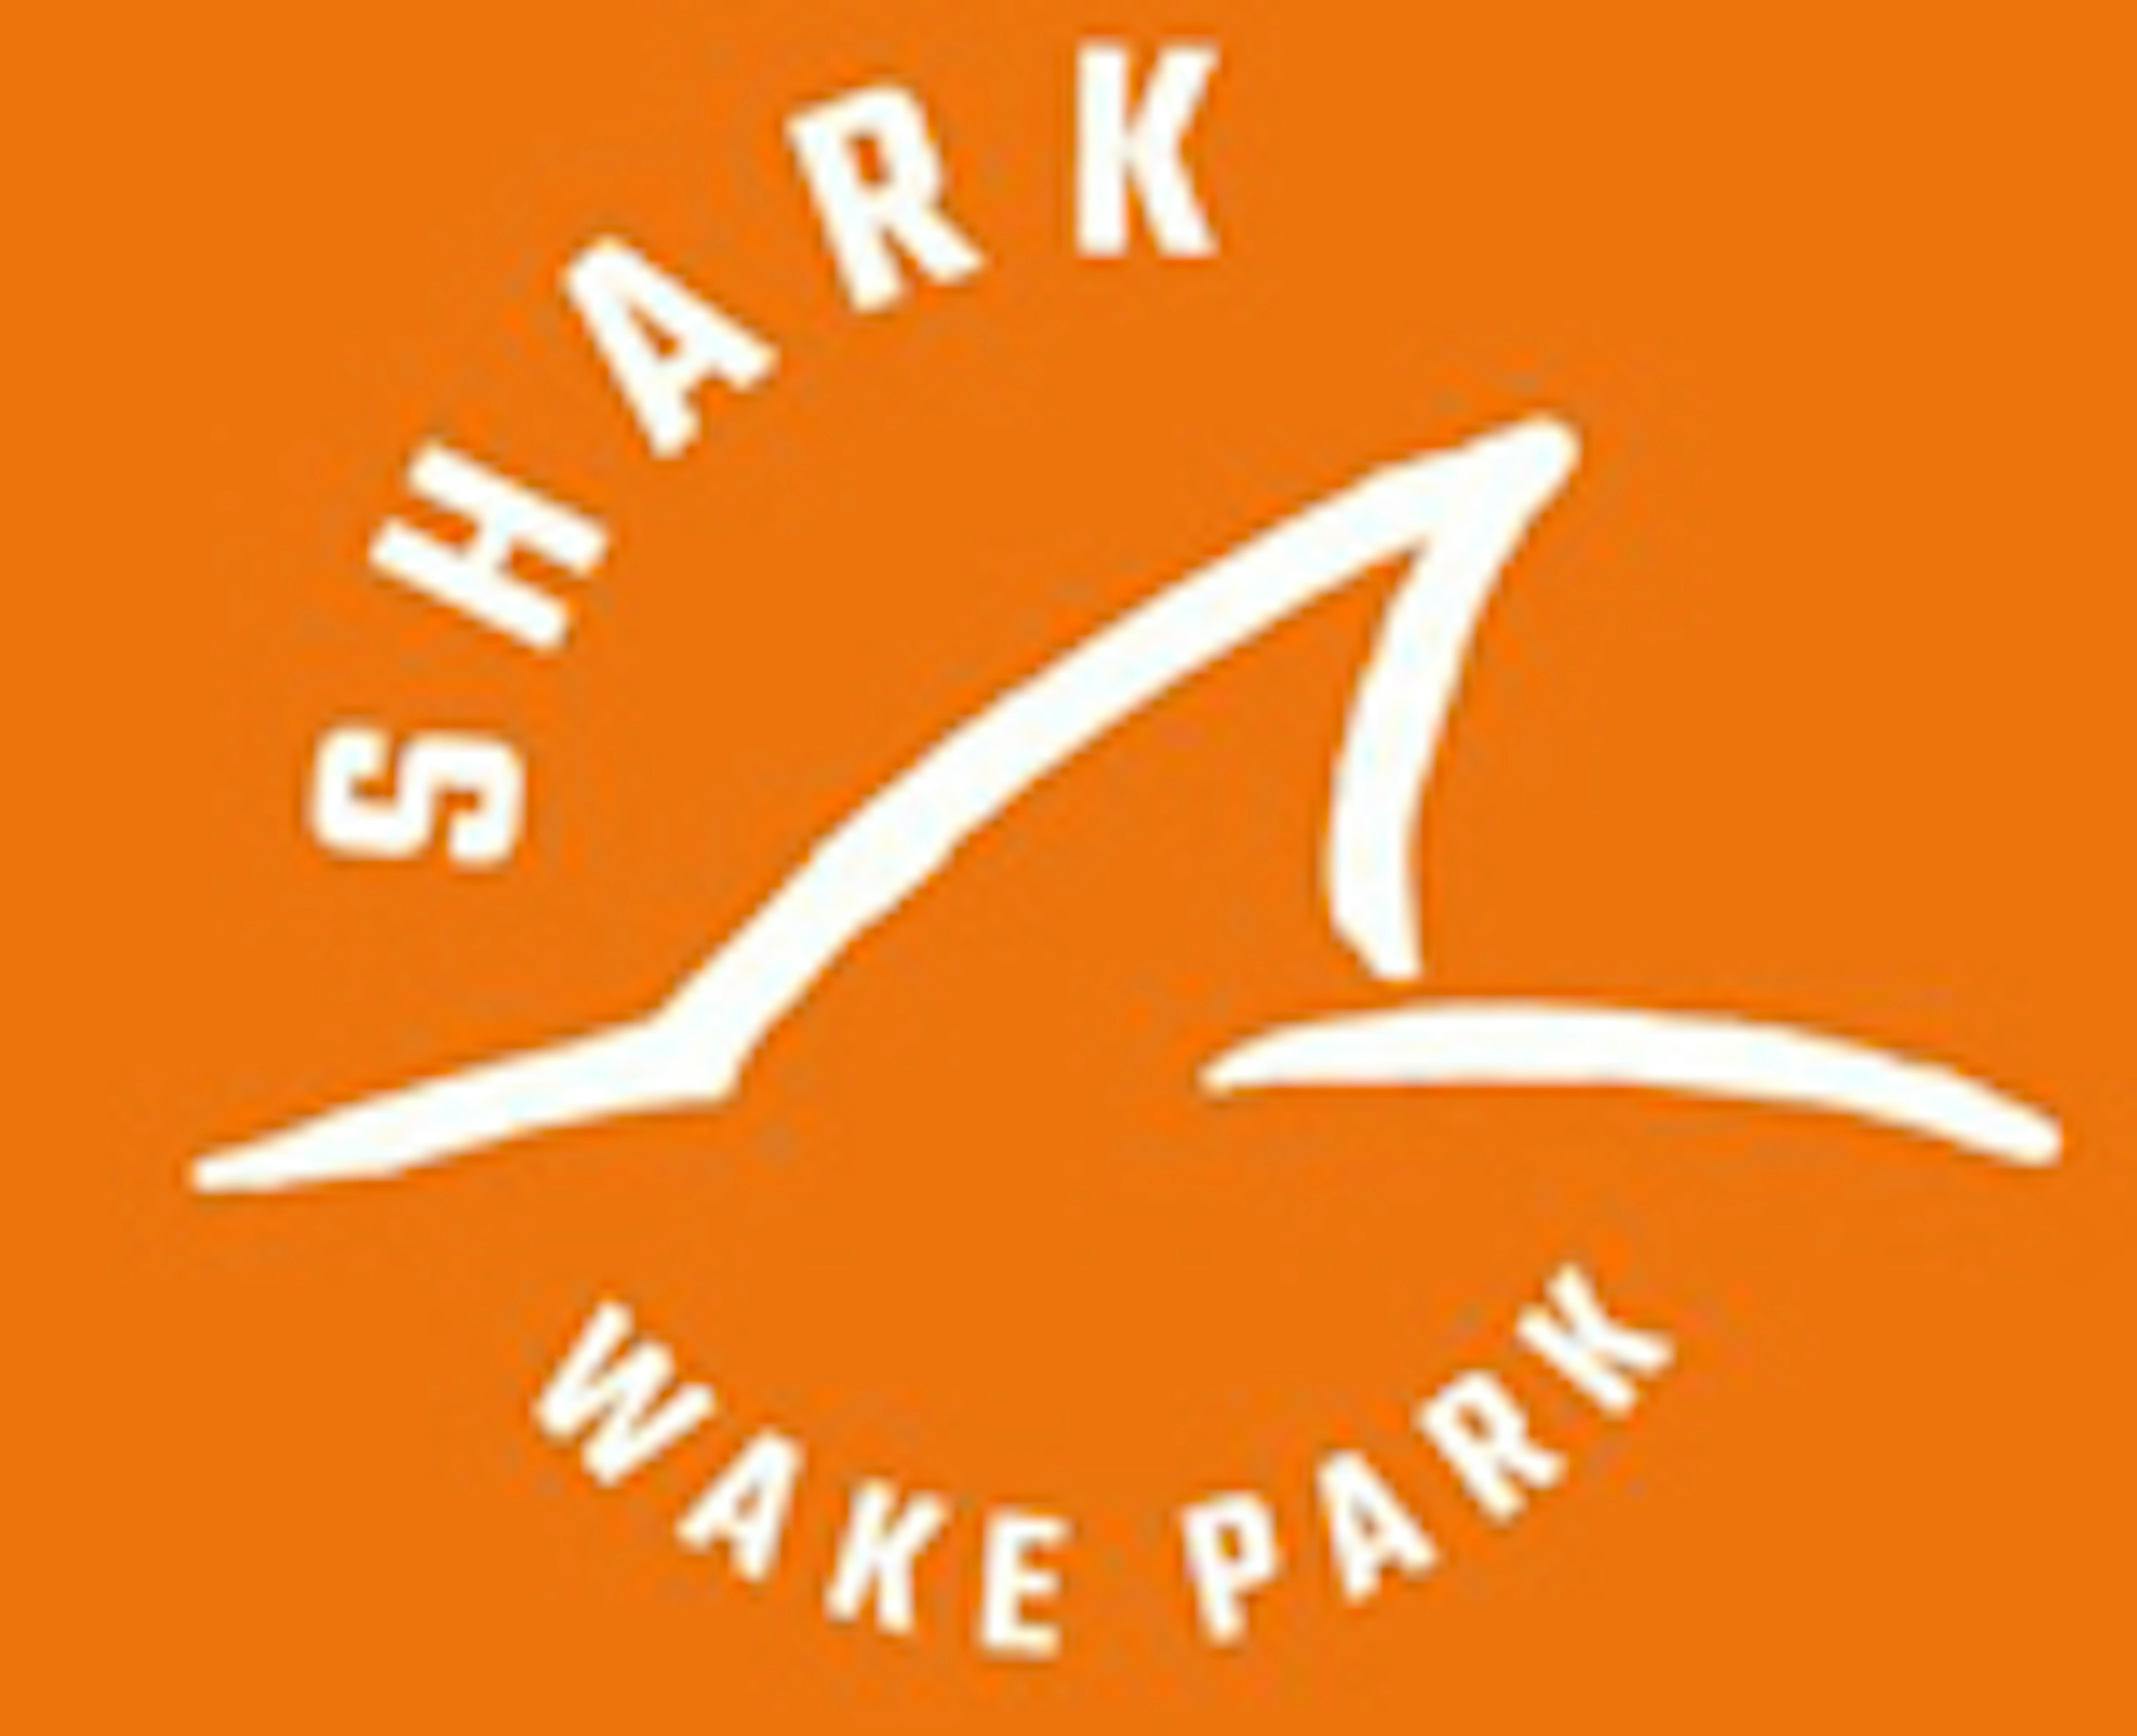 Shark Wake Park 843